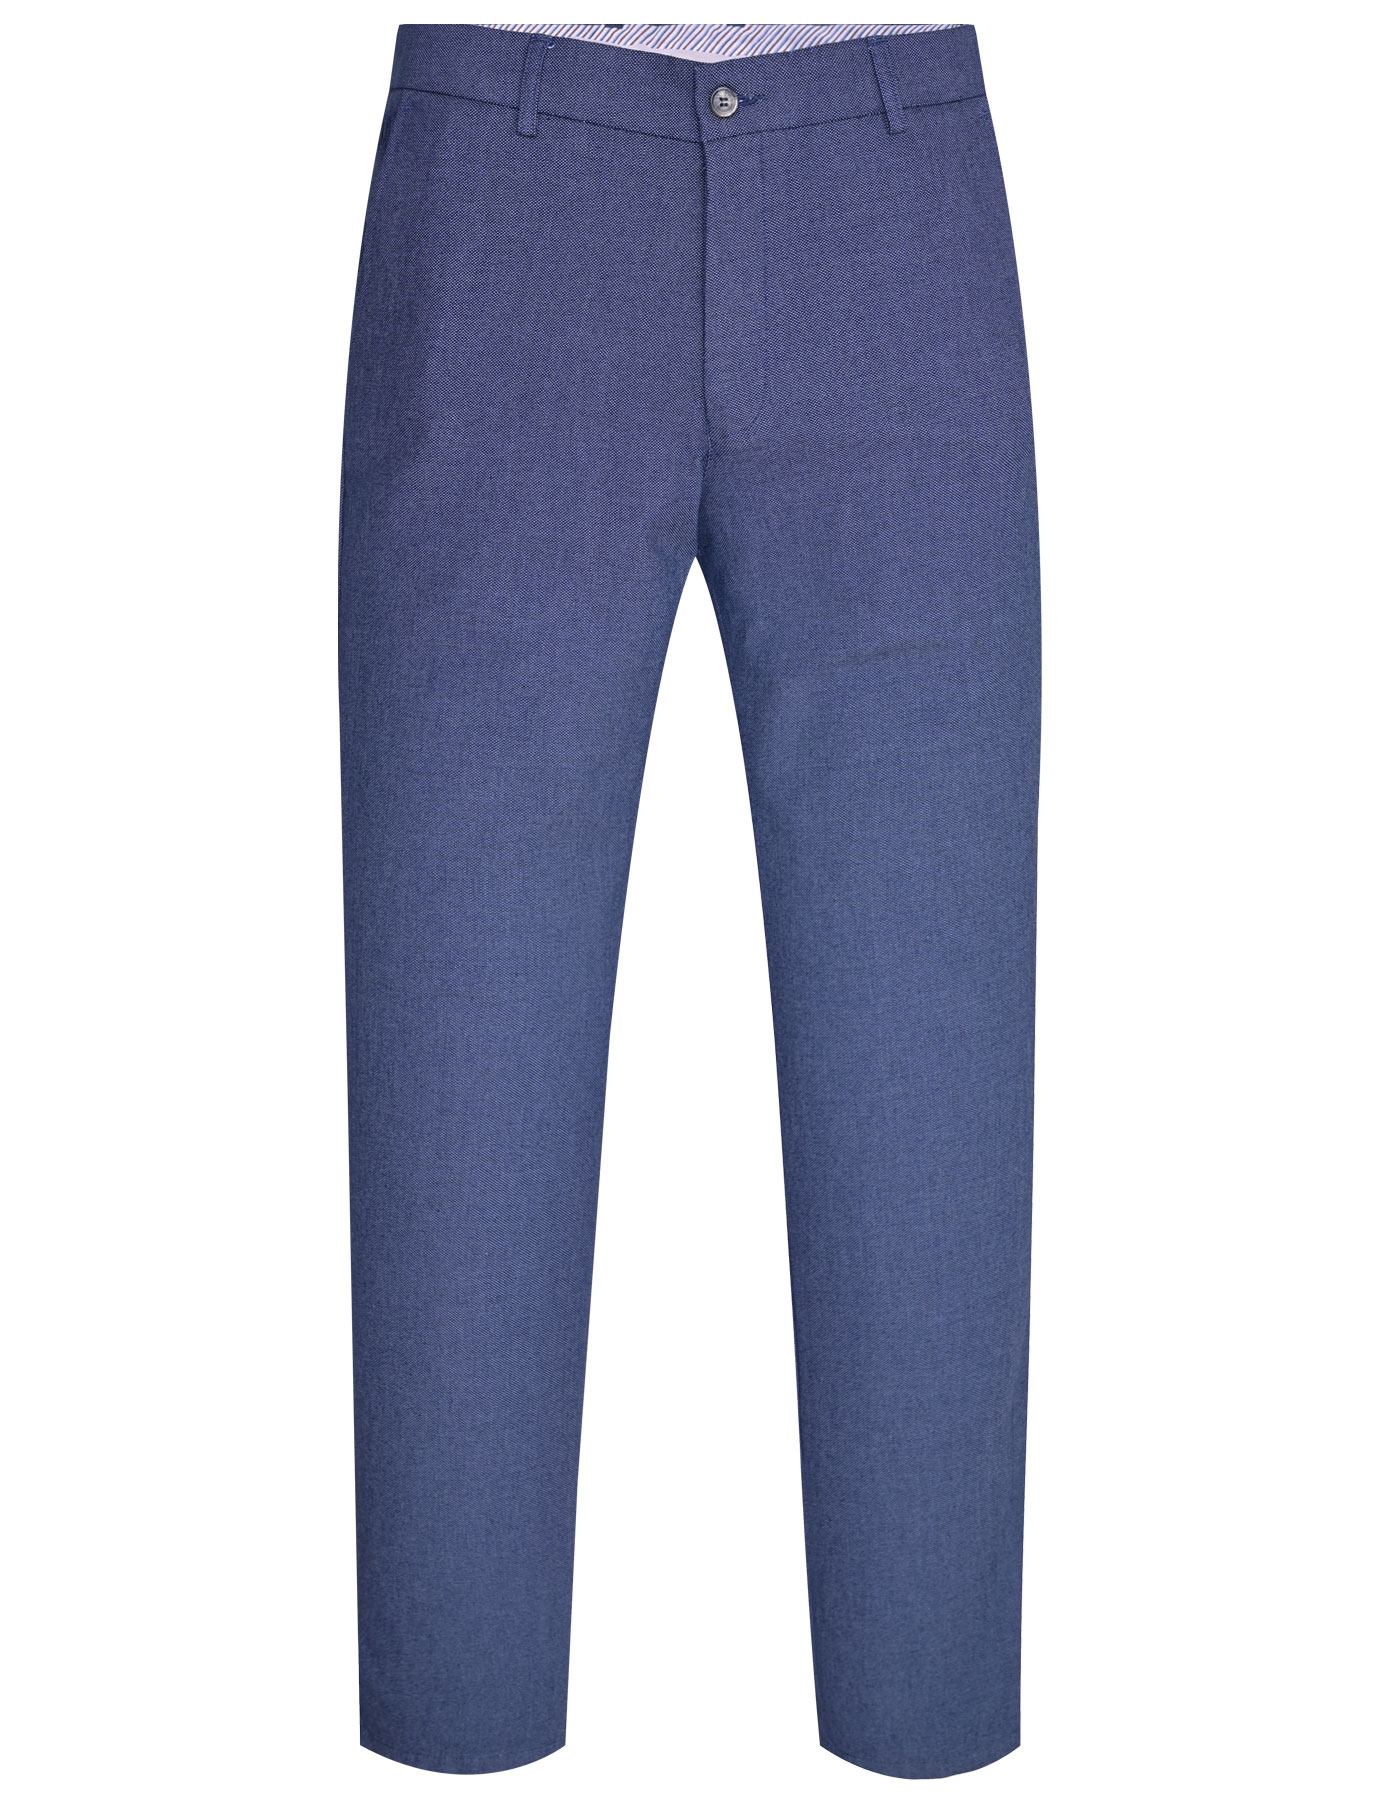 Blue Texture Cotton Trouser